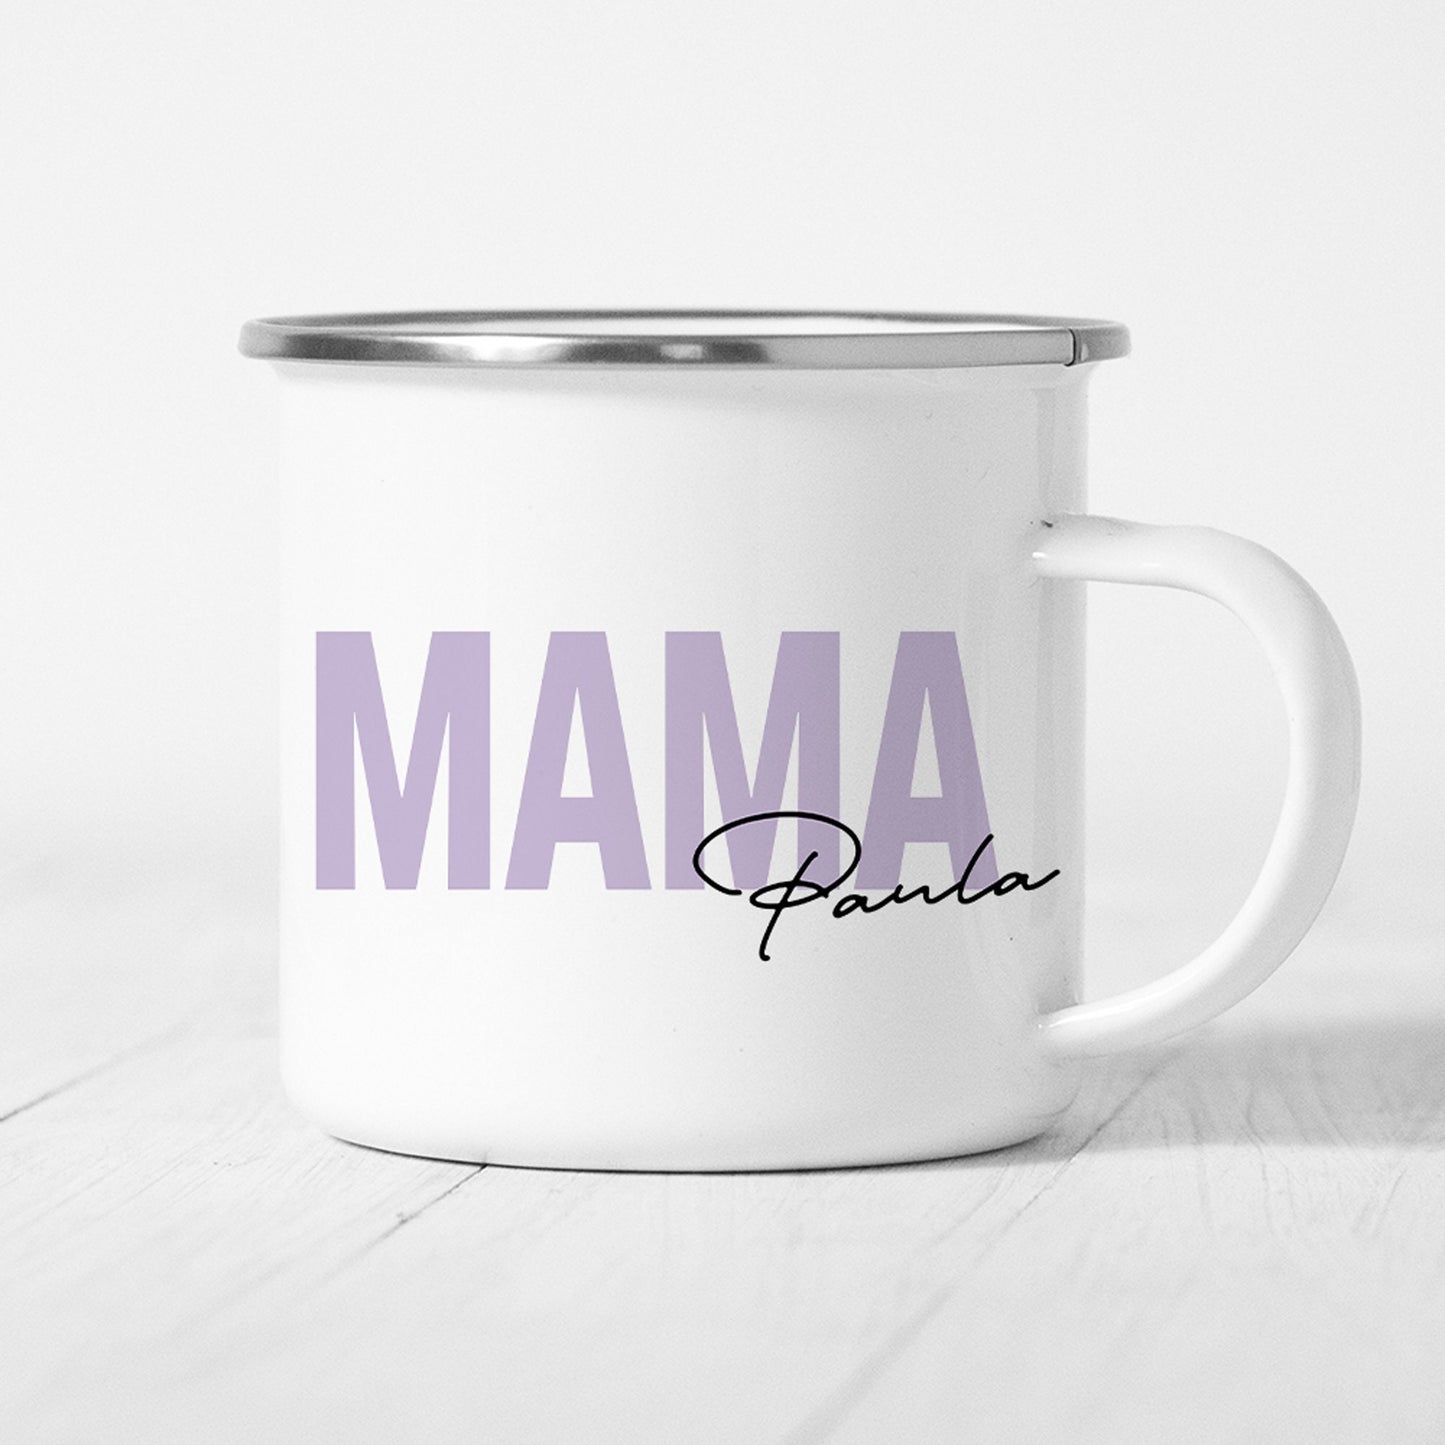 Mama Emaille Tasse Keramik Personalisiert mit Namen Verschiedene Farben Mutter Geschenk Geburtstag Muttertag Muttertagsgeschenk